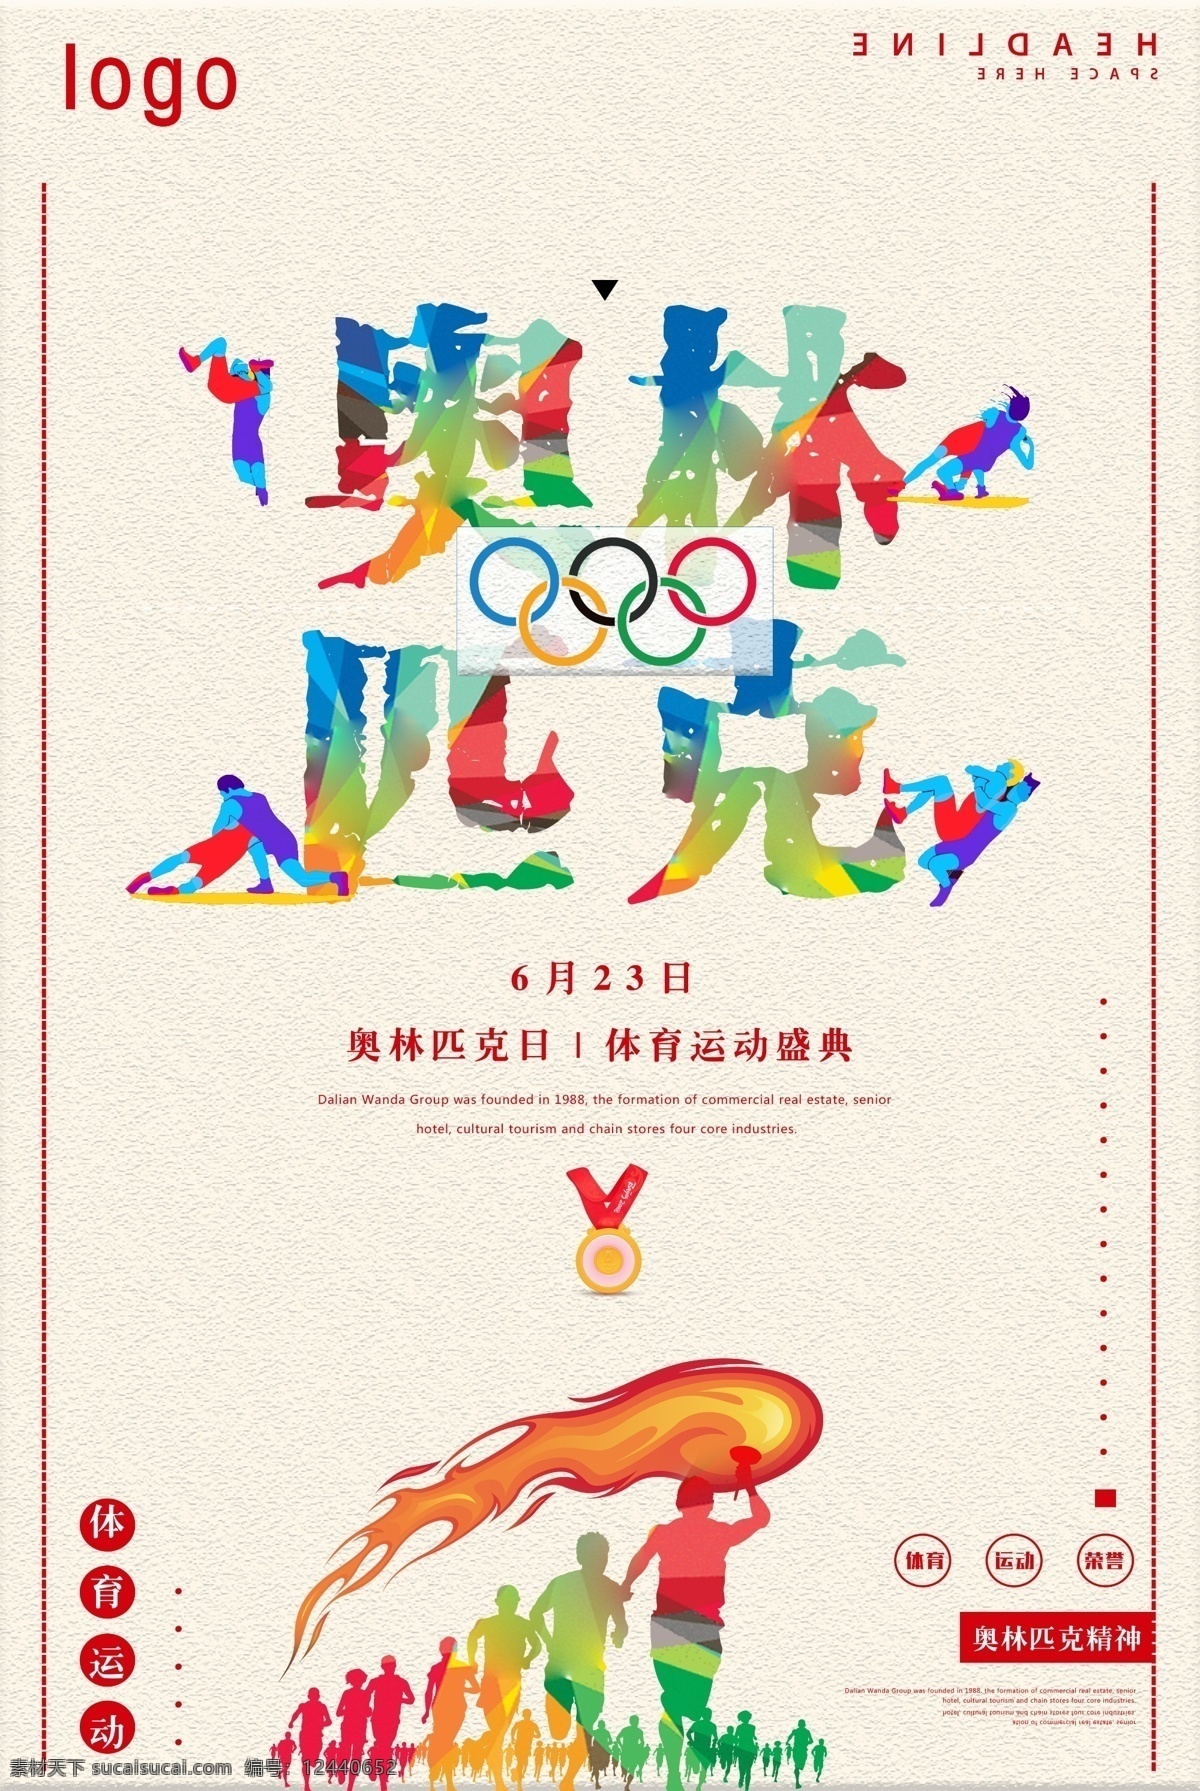 缤 彩 奥林匹克日 宣传海报 运动会 健身 健身运动 奥林匹克 奥林匹克精神 全民运动 6月23日 国际奥林匹克 国际奥运会 623奥运会 奥林匹克海报 纪念奥林匹克 奥林匹克广告 奥运精神